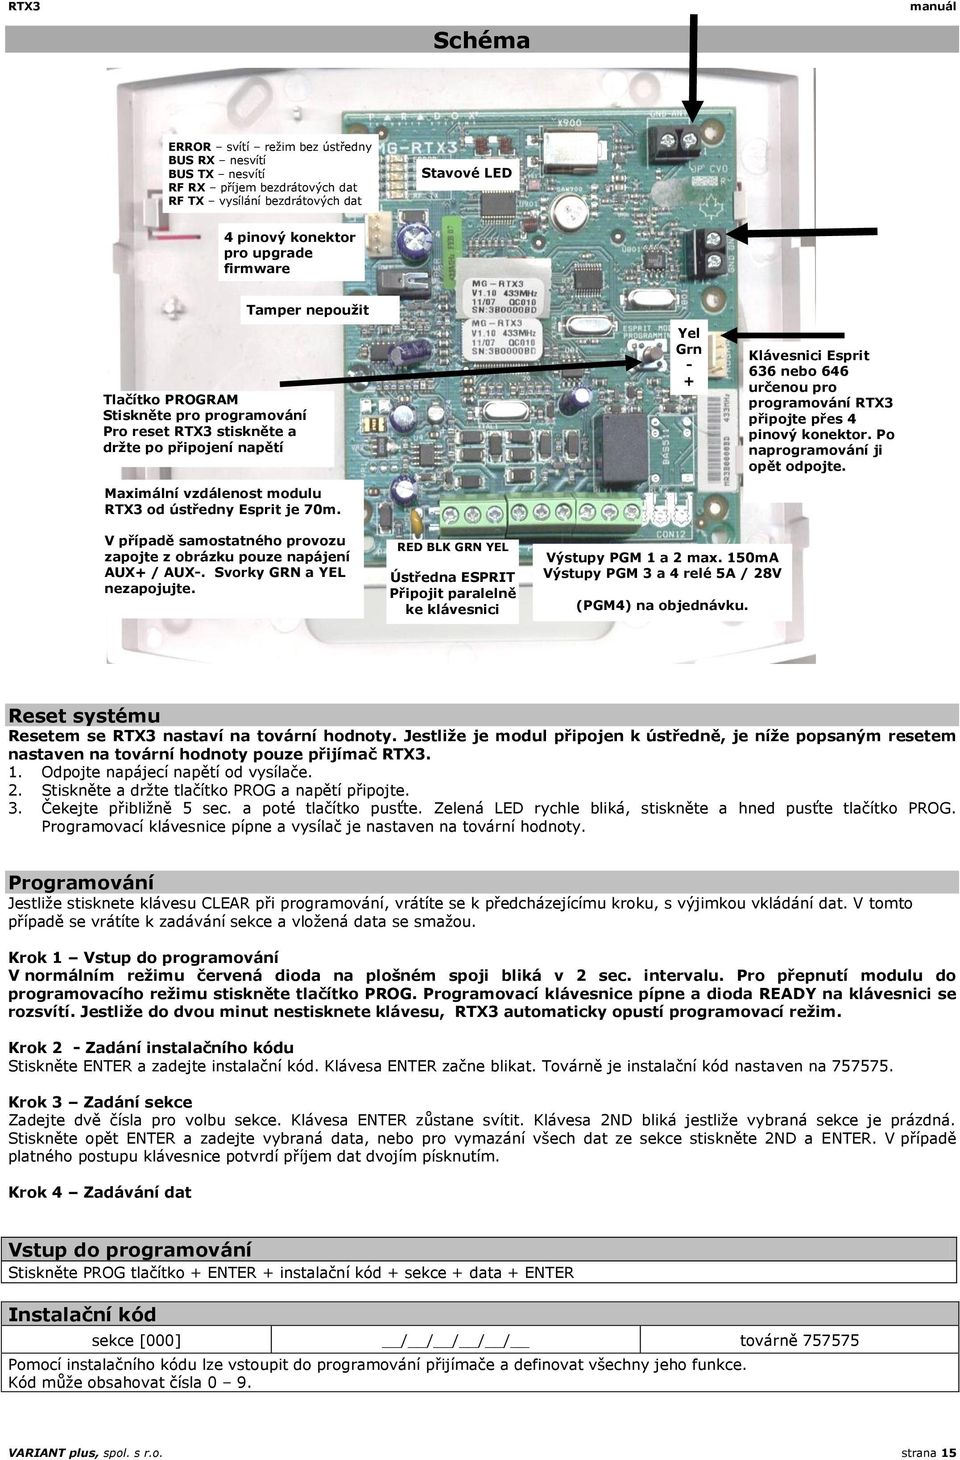 Yel Grn - + Klávesnici Esprit 636 nebo 646 určenou pro programování RTX3 připojte přes 4 pinový konektor. Po naprogramování ji opět odpojte.